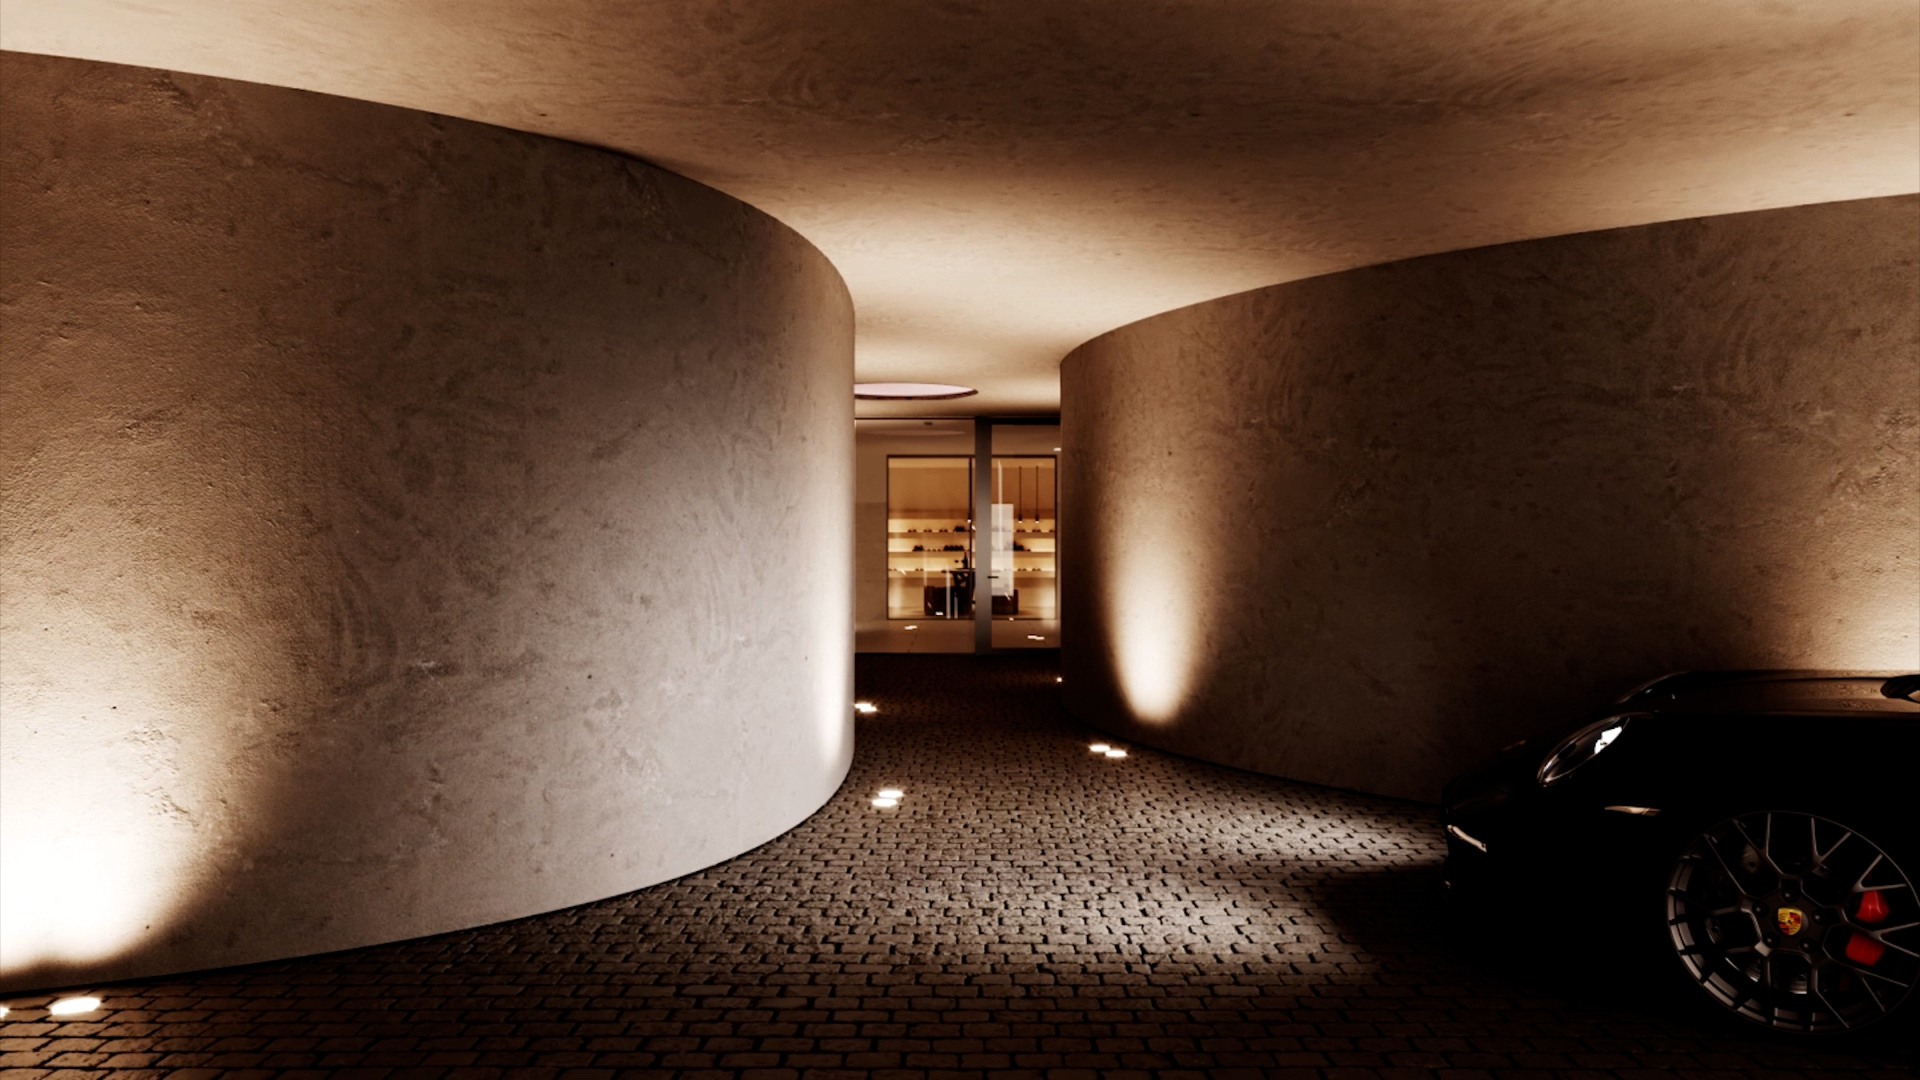 WJR Vertikal interior architecture by Eline Ostyn underground